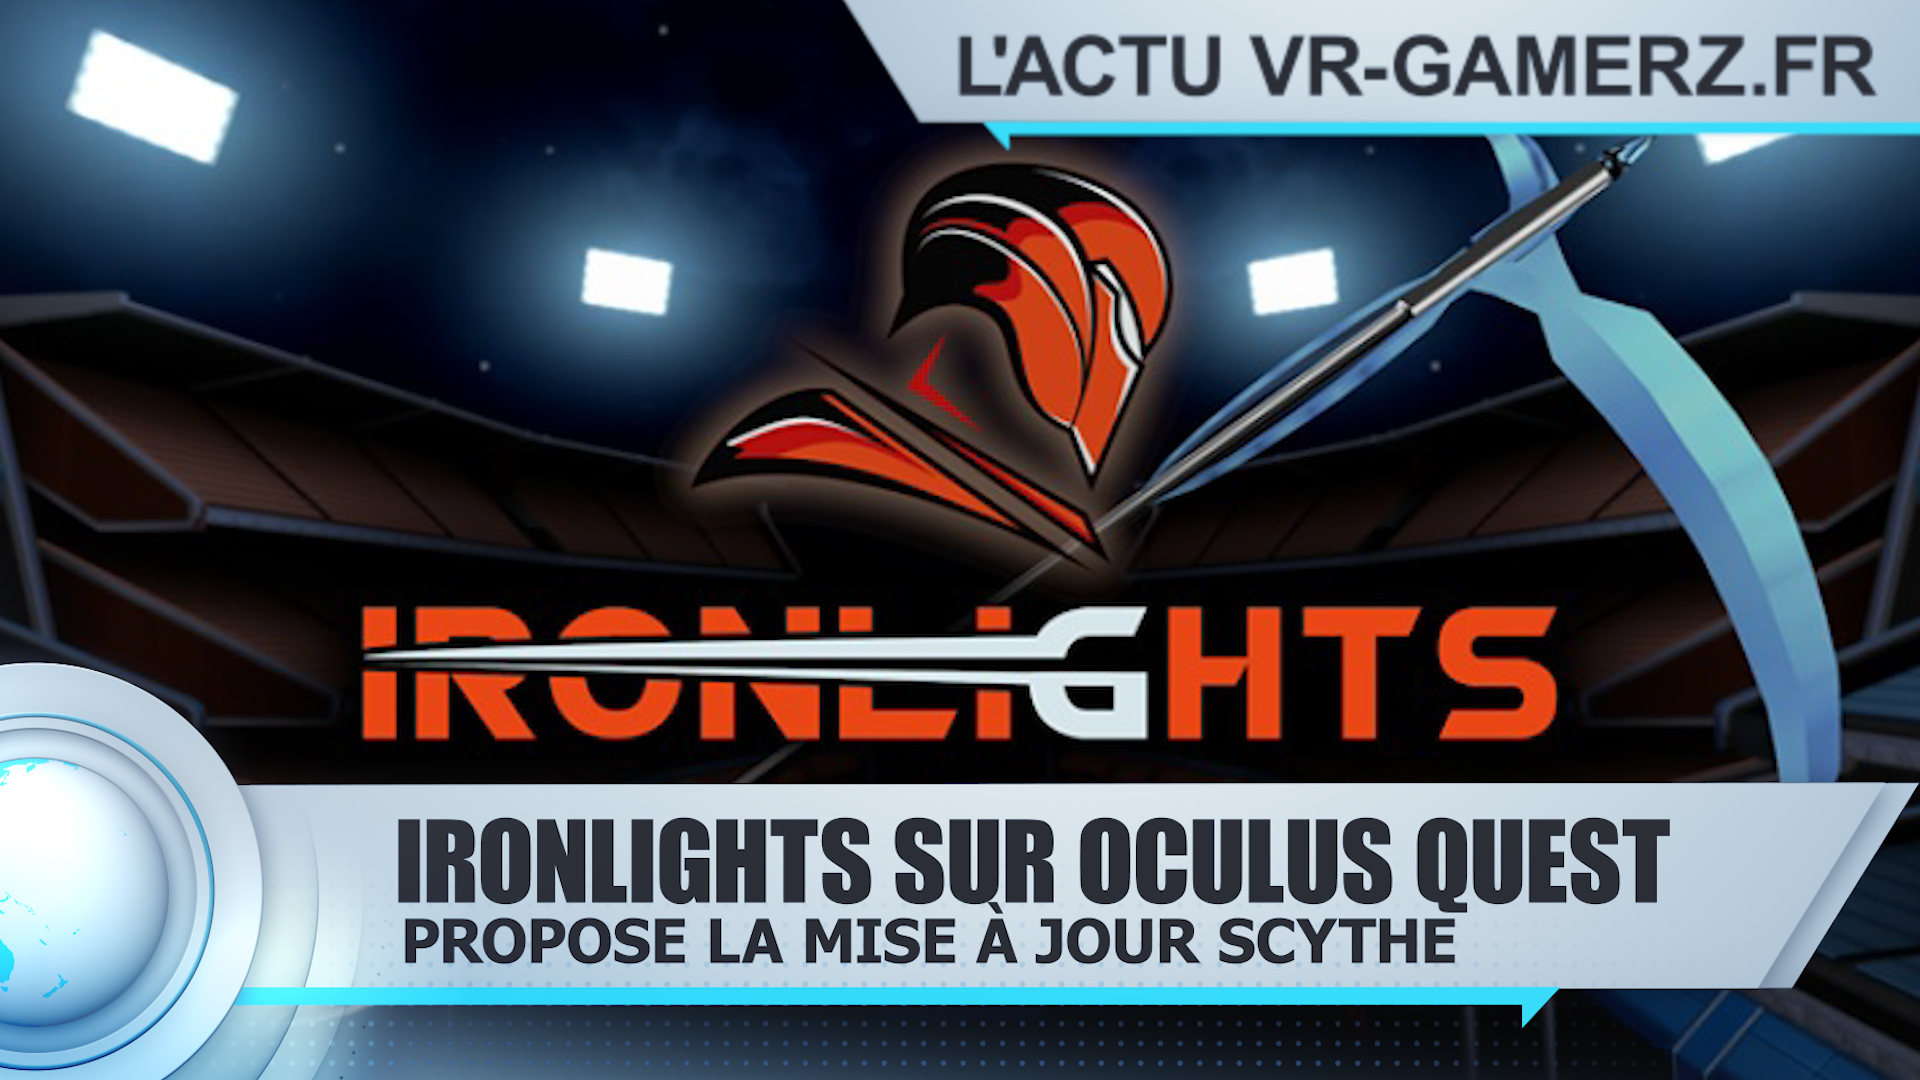 Ironlights Oculus quest : La mise à jour Scythe est disponible